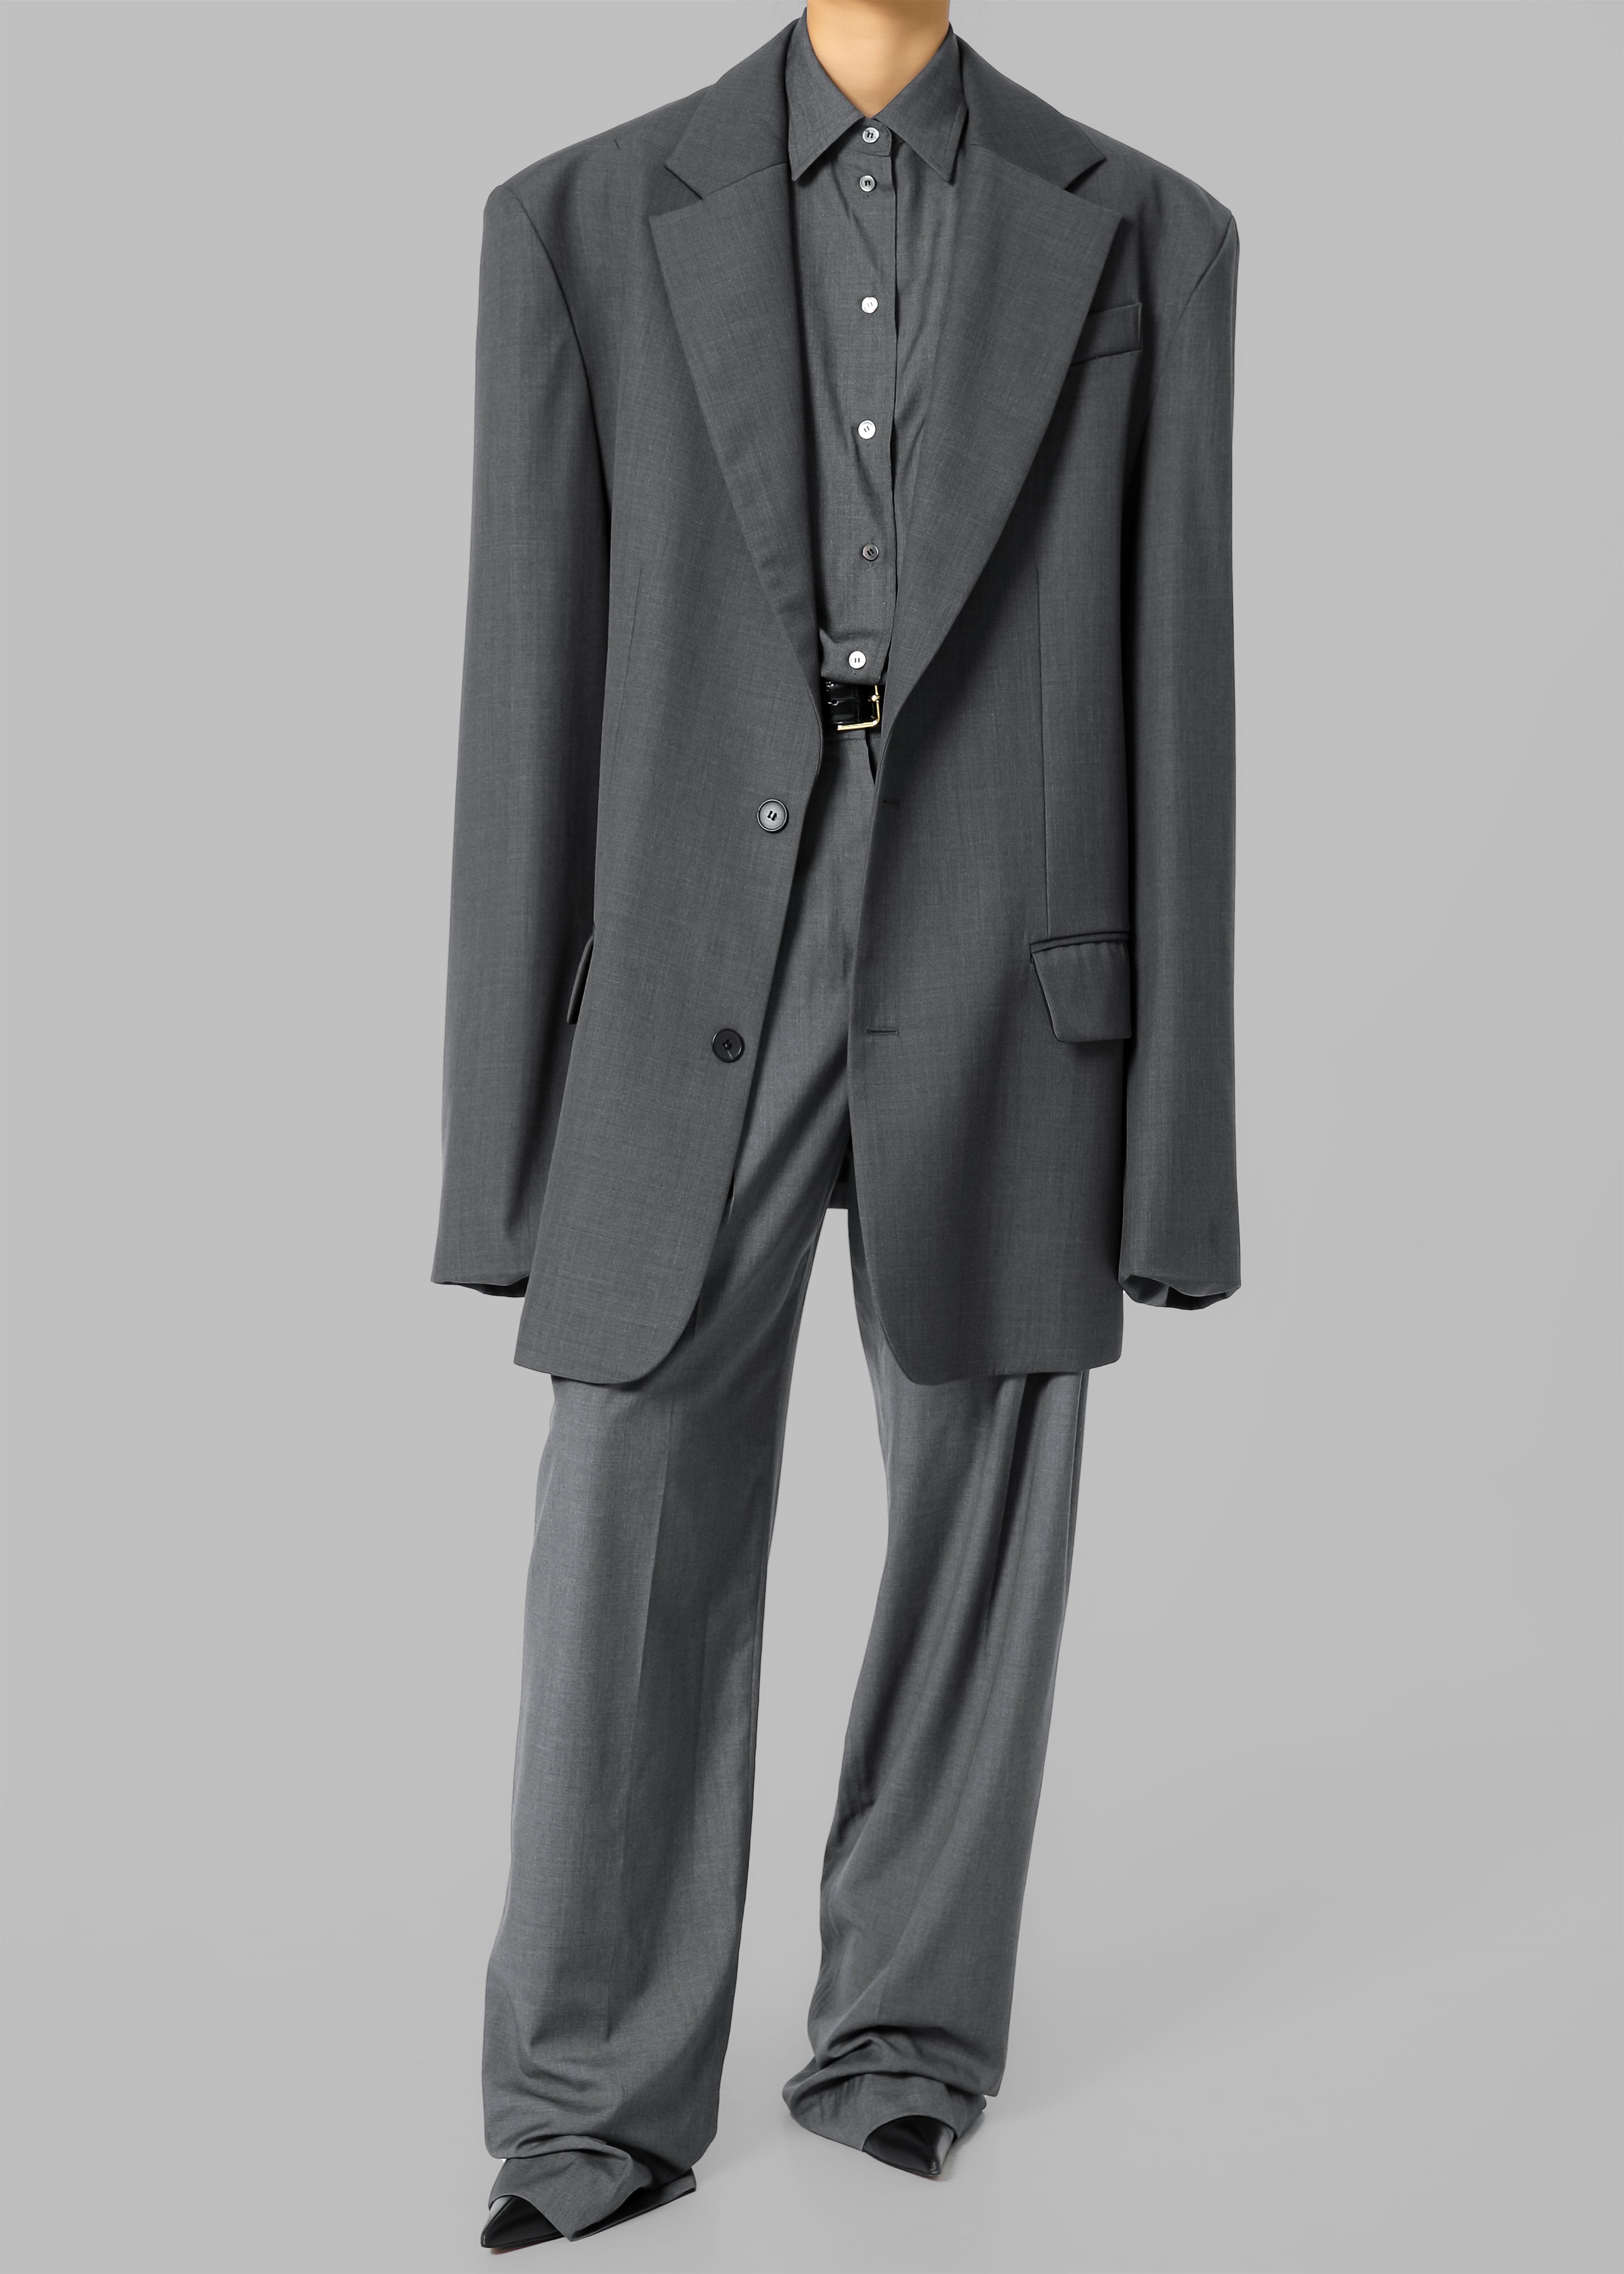 Gelso Pleated Trousers - Dark Grey Melange - 46